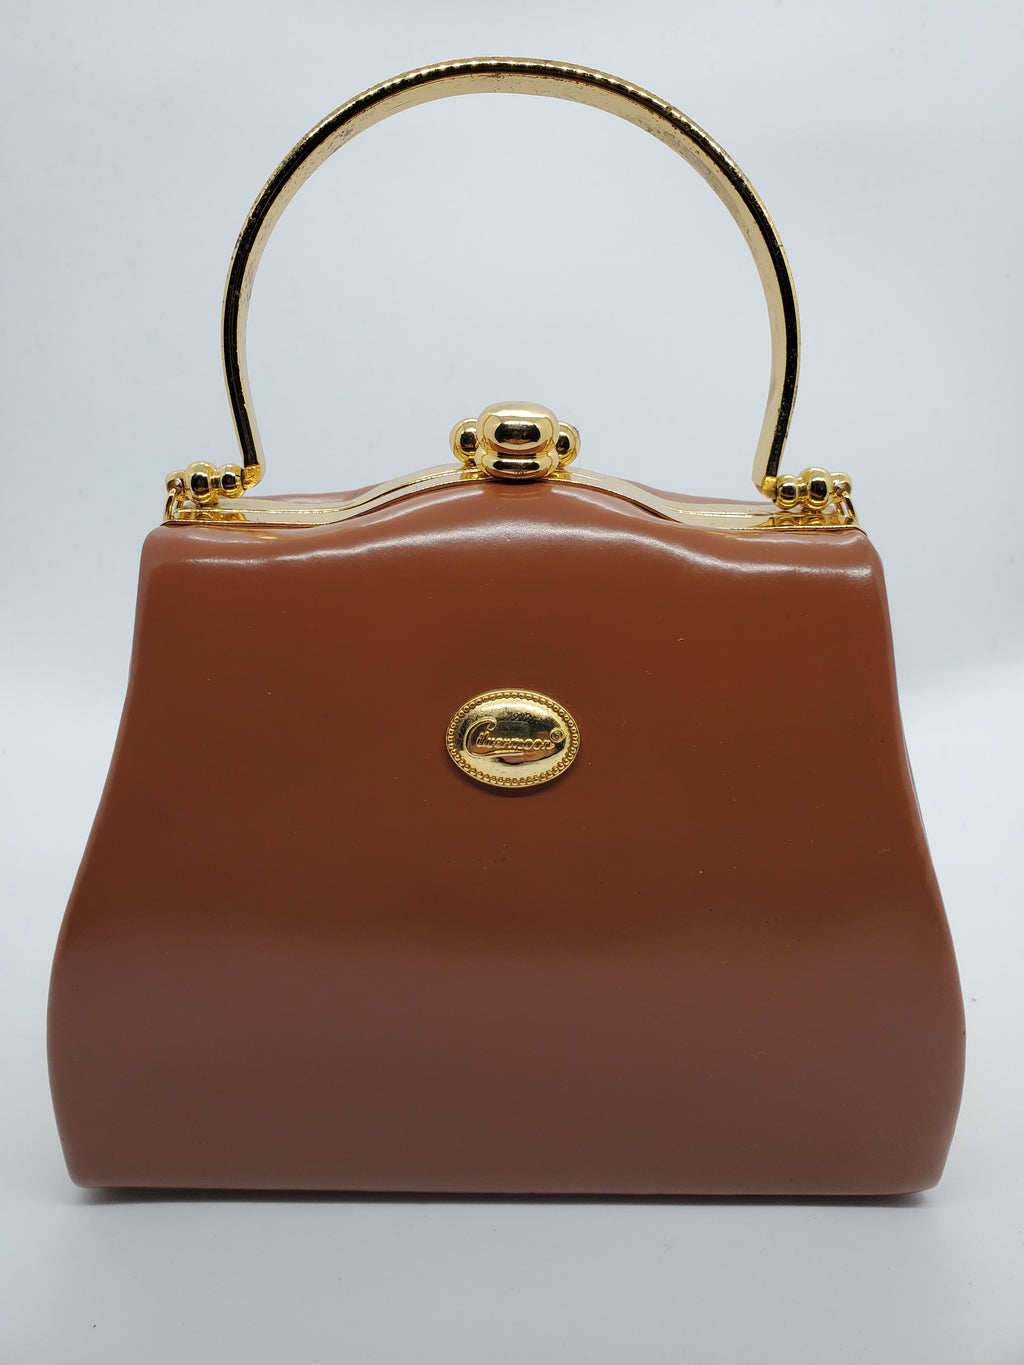 front view of tan and gold hard shell retro handbag